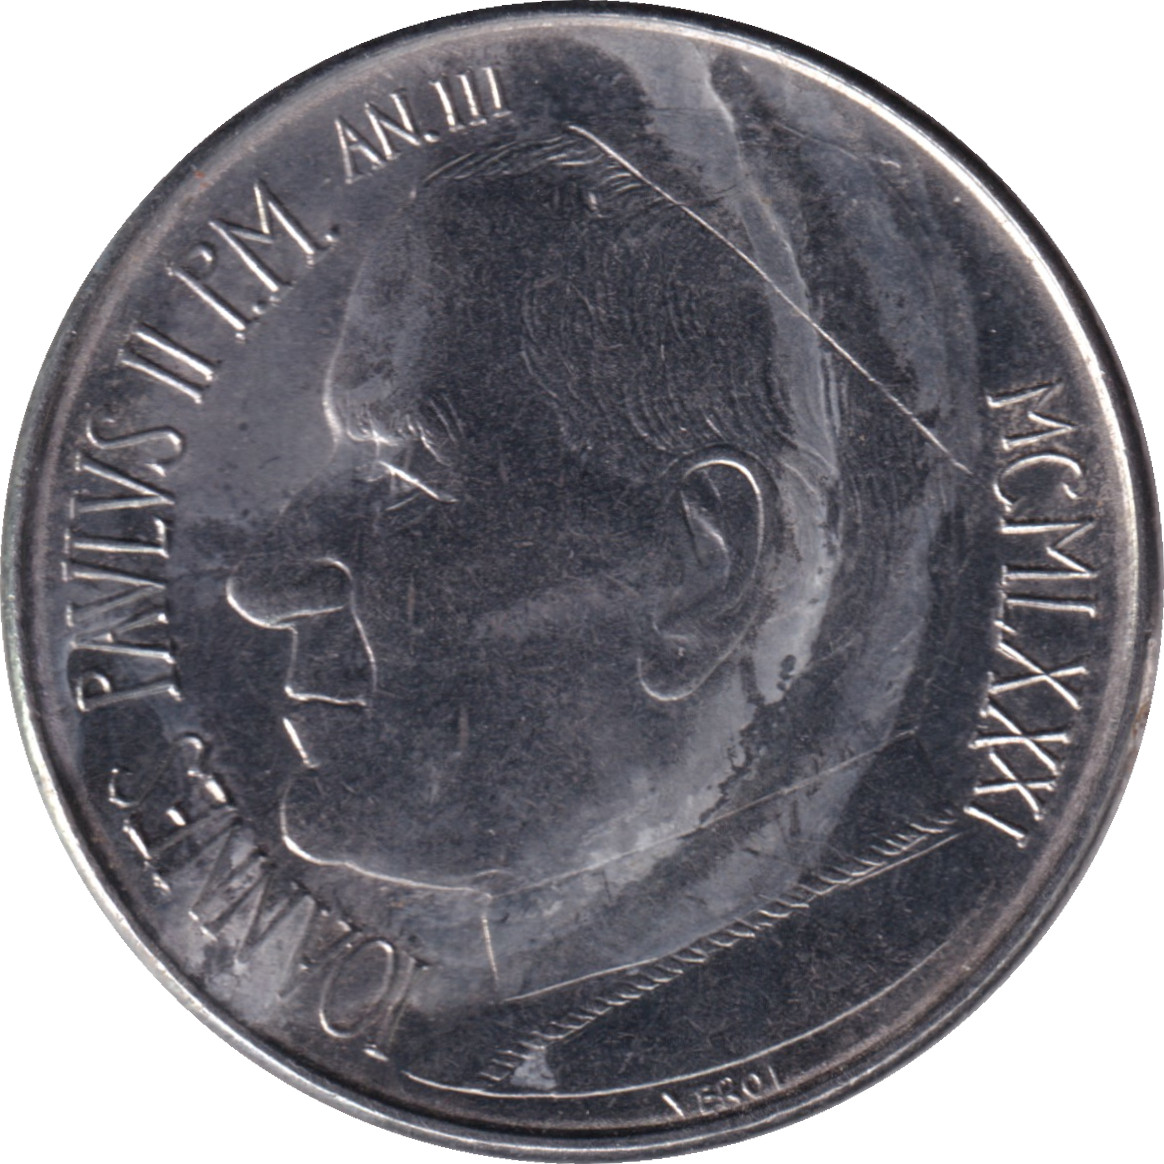 50 lire - John Paul II - Figures debout